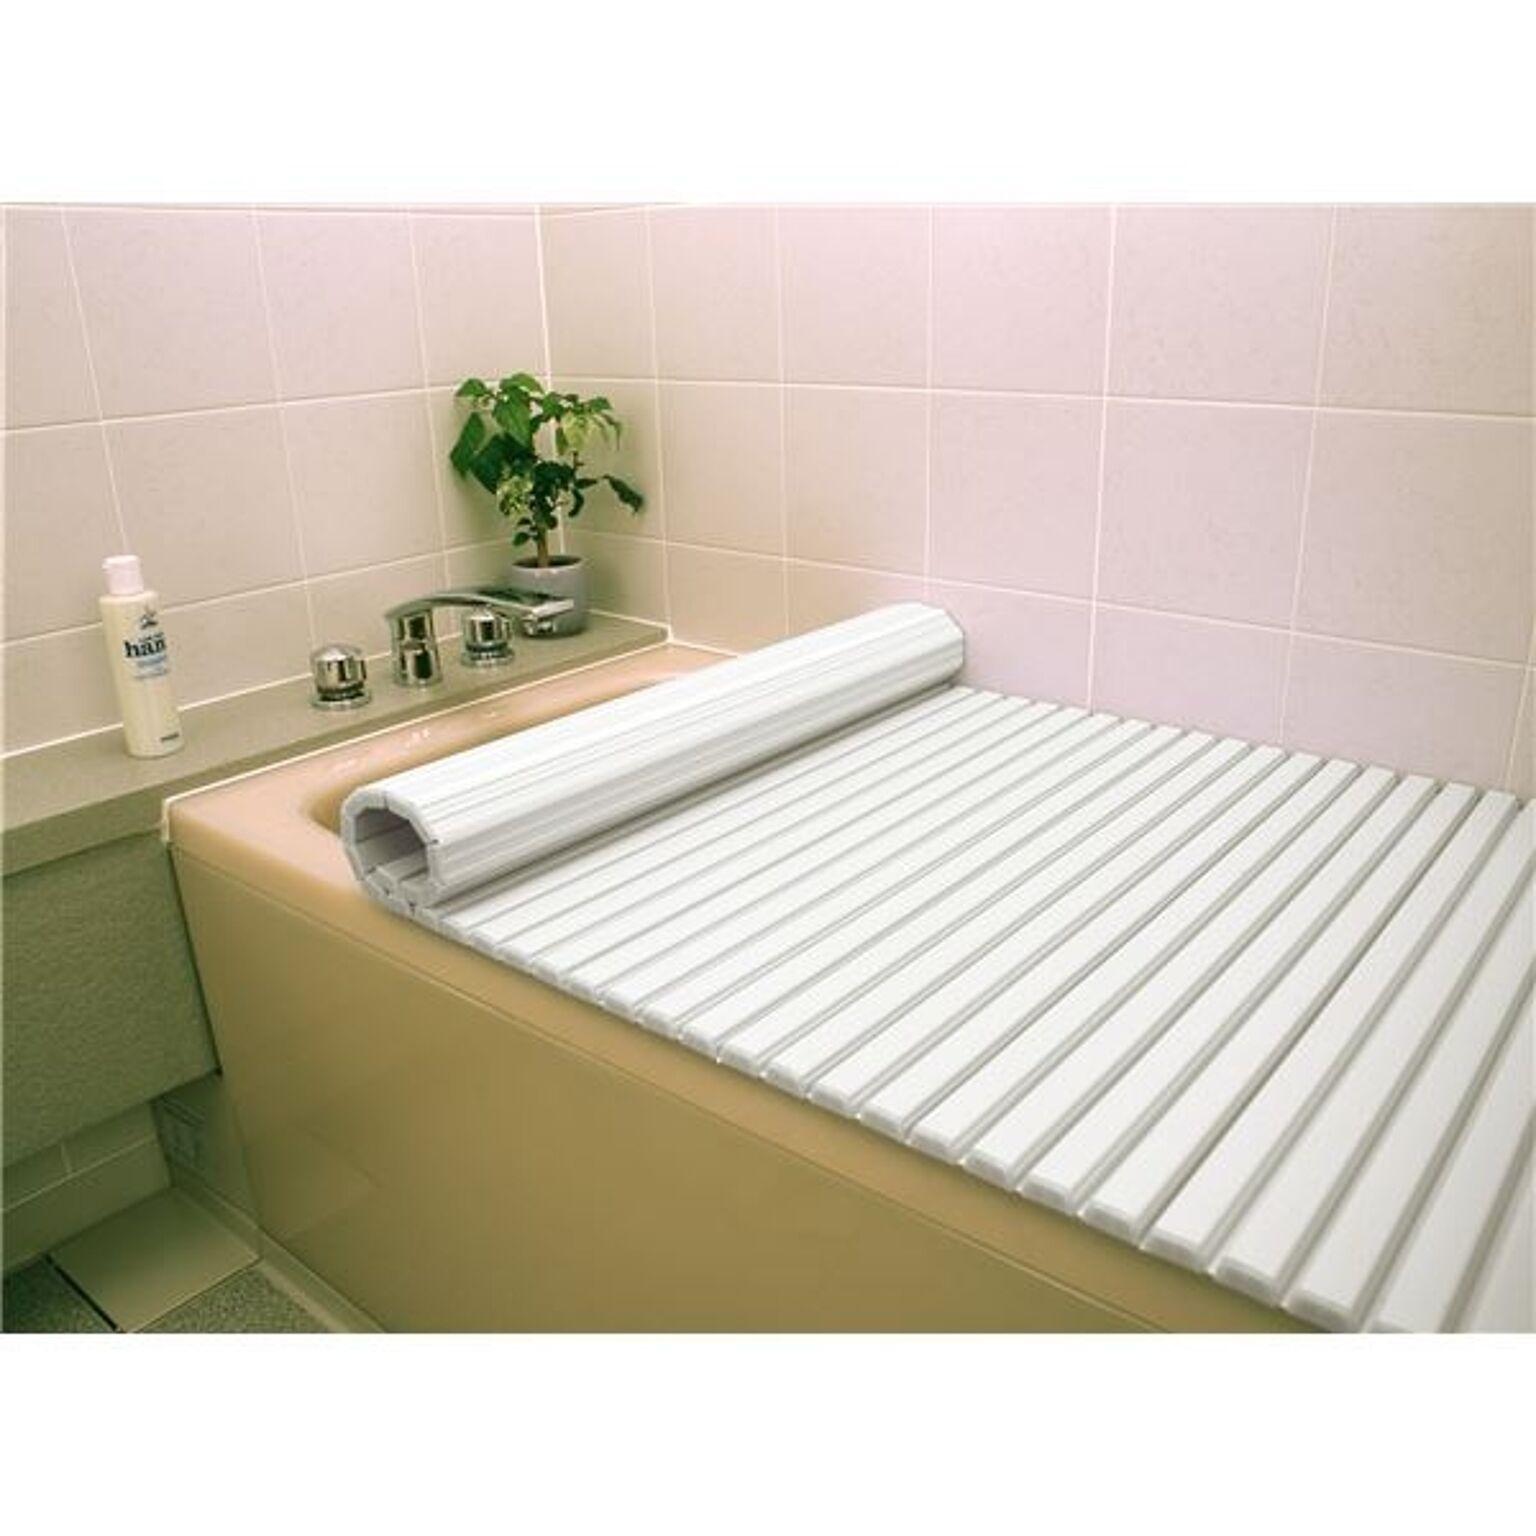 シャッター式風呂ふた/巻きフタ 70cm×140cm用 ホワイト SGマーク認定 日本製